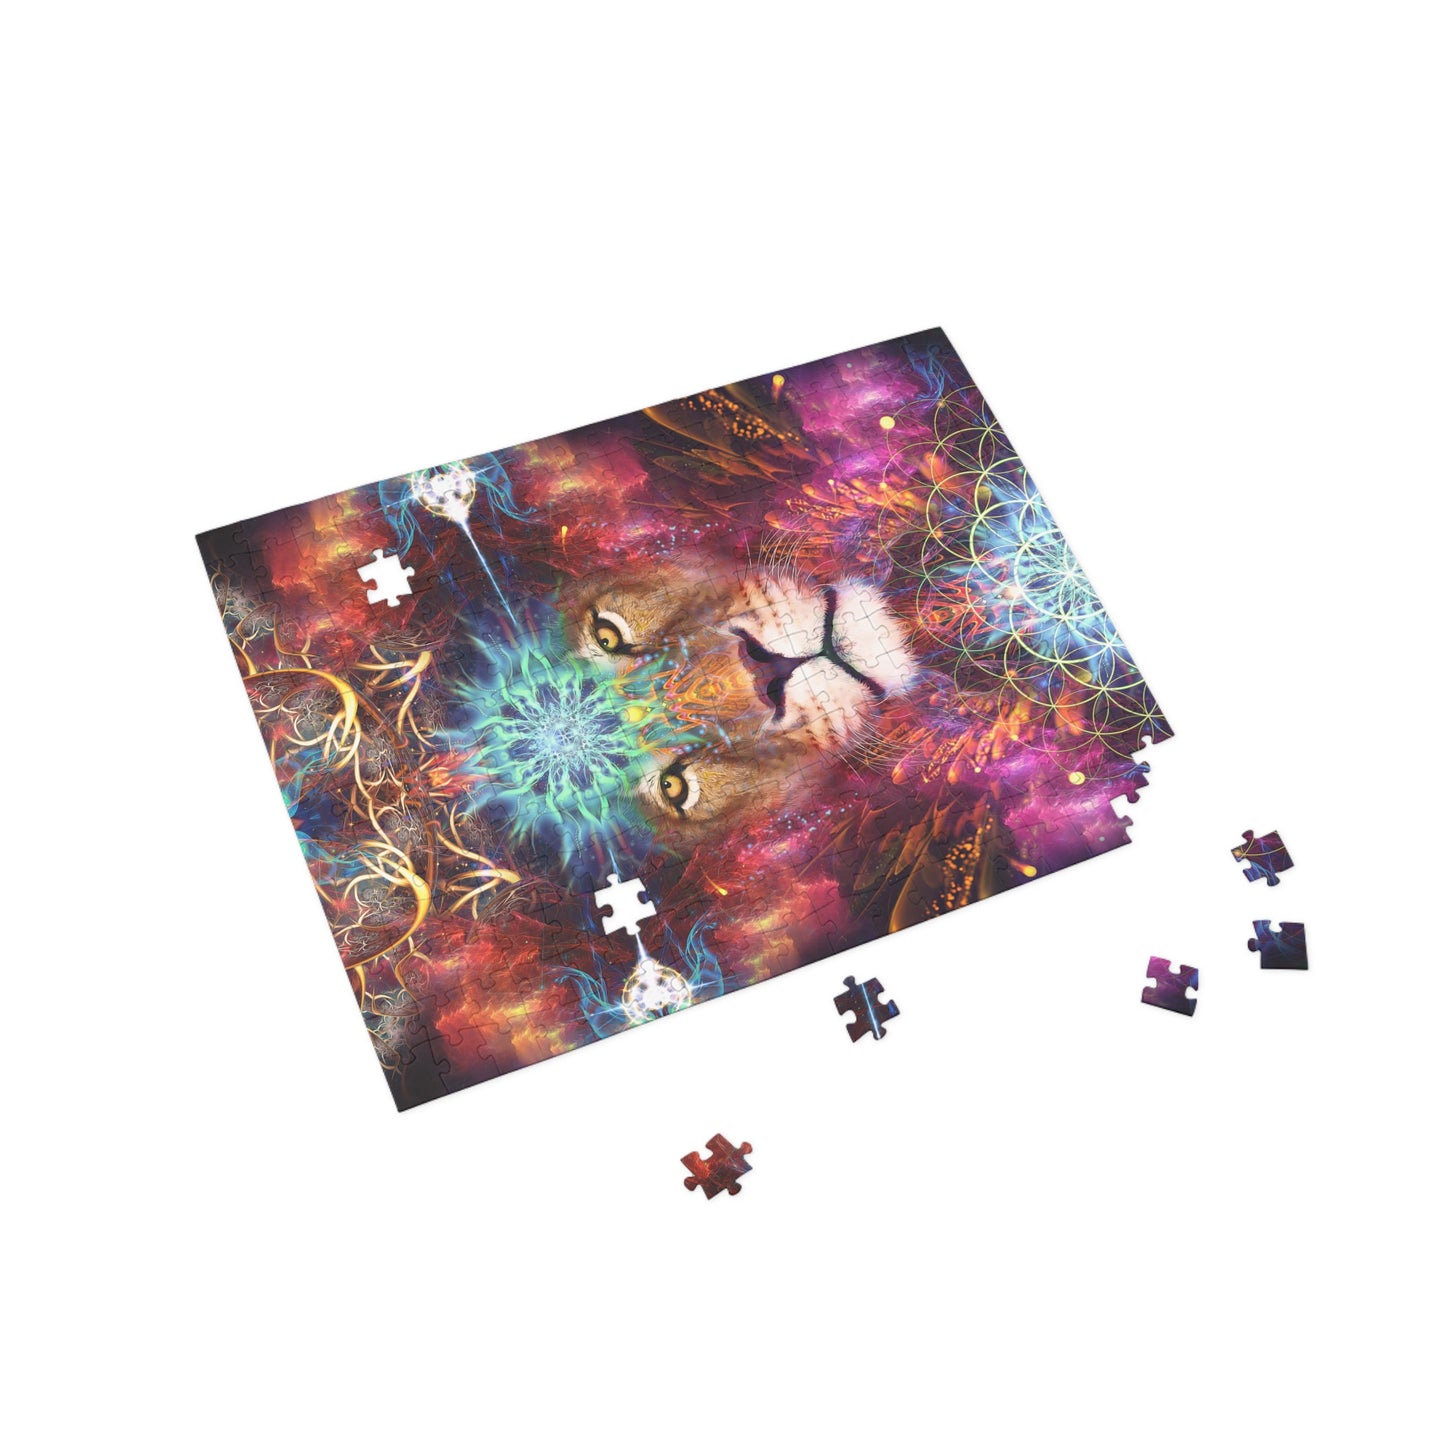 "Genesis" Jigsaw Puzzle (96, 252, 500, 1000-Piece)